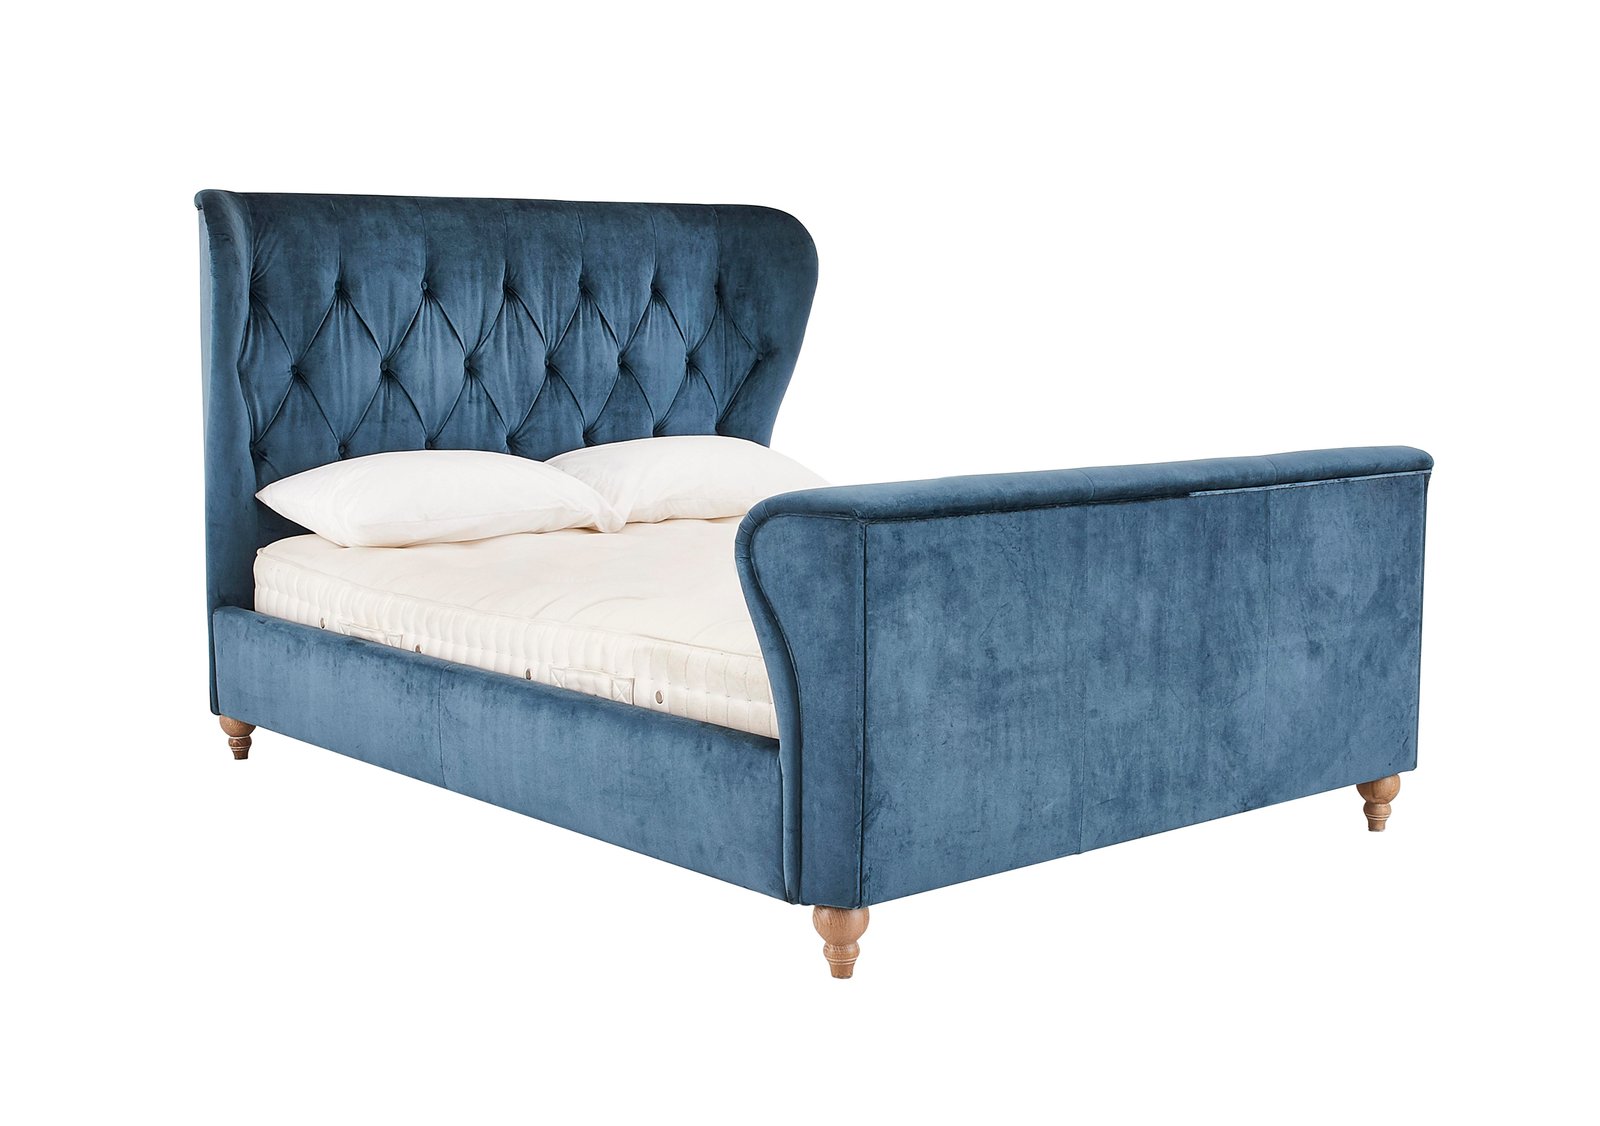 Cheltenham Bed Frame in Gardenia Blue/Grey on Furniture Village